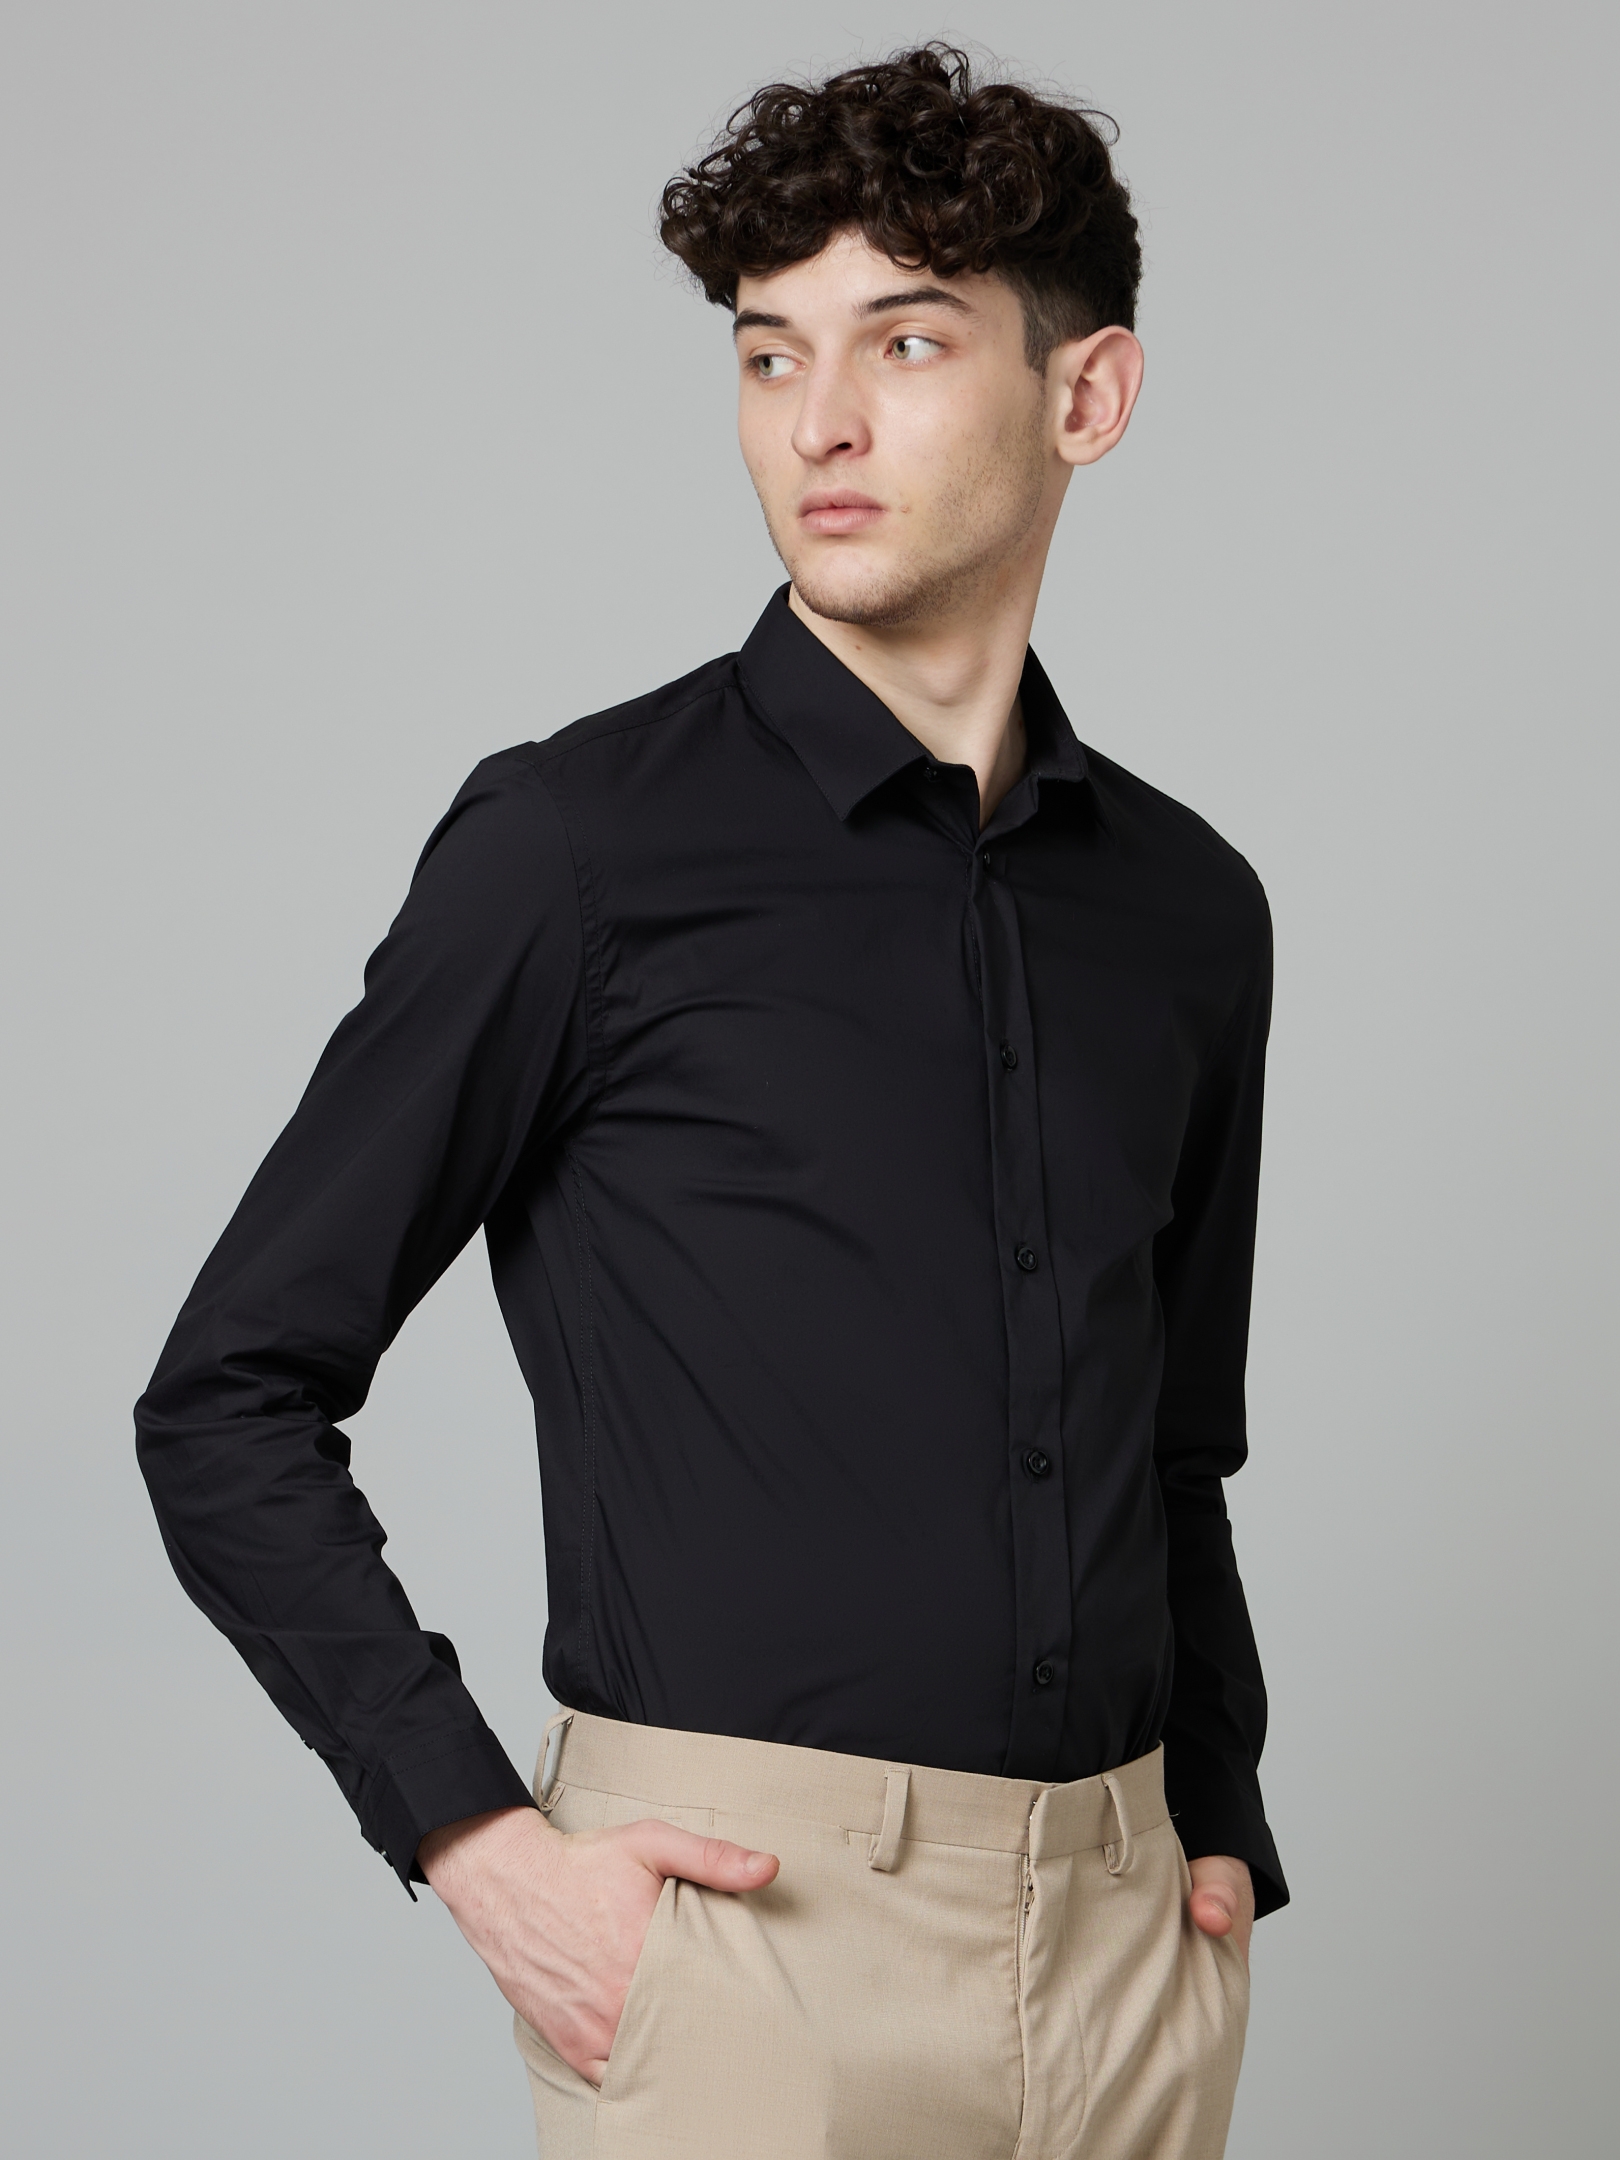 Men's Black Solid Formal Shirts